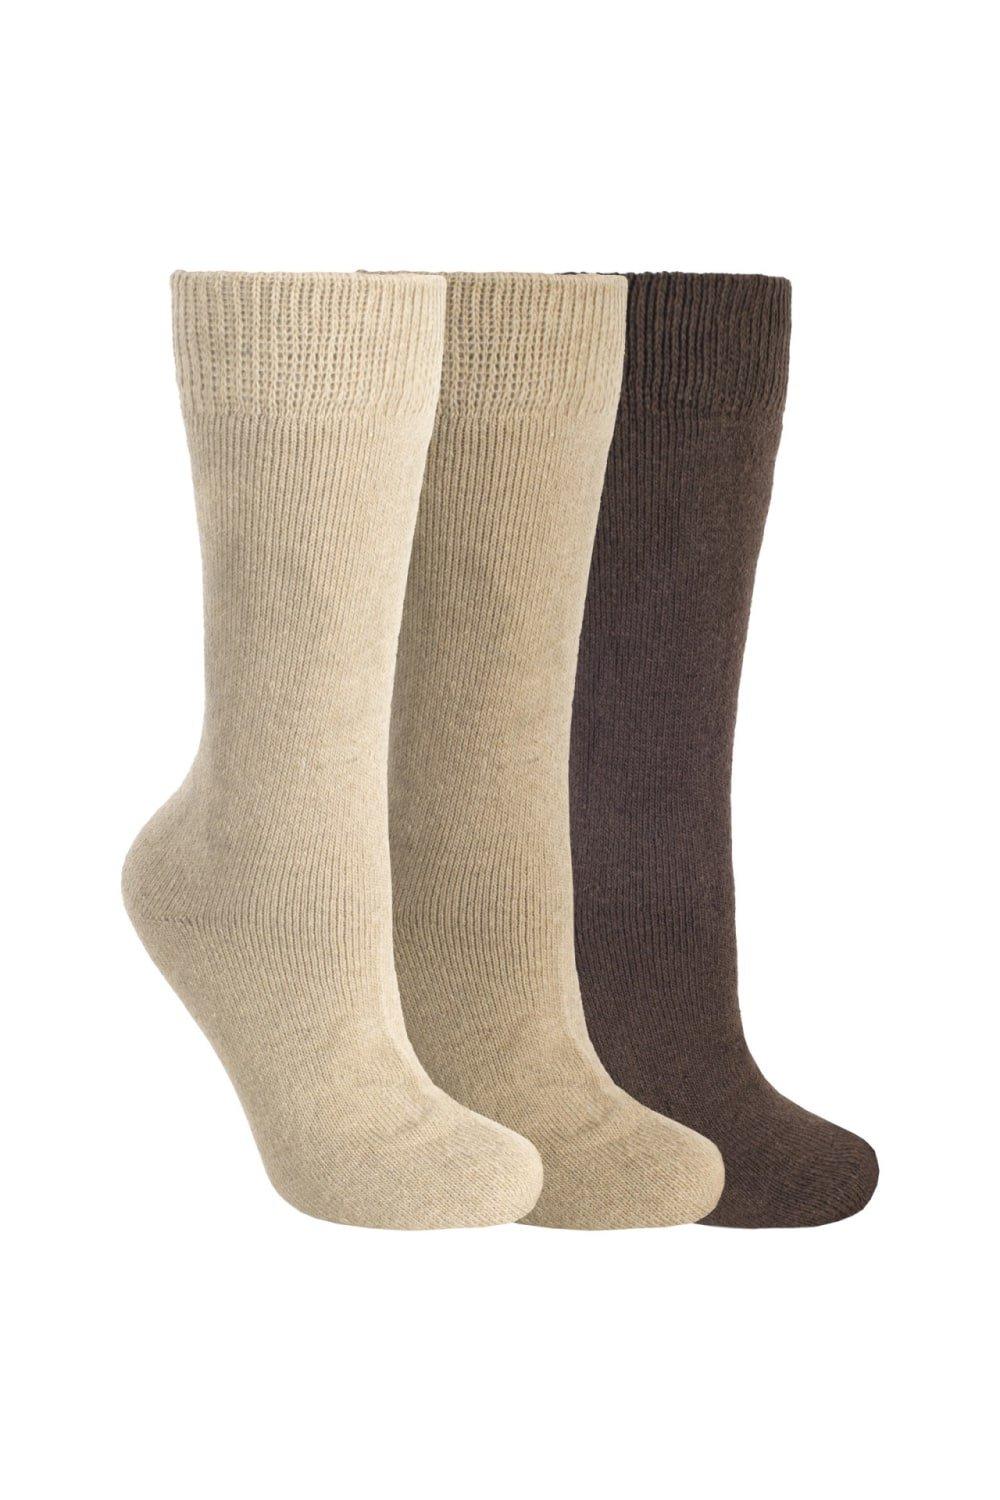 Sliced Plain Casual Socks (Pack Of 3) - ASRTD